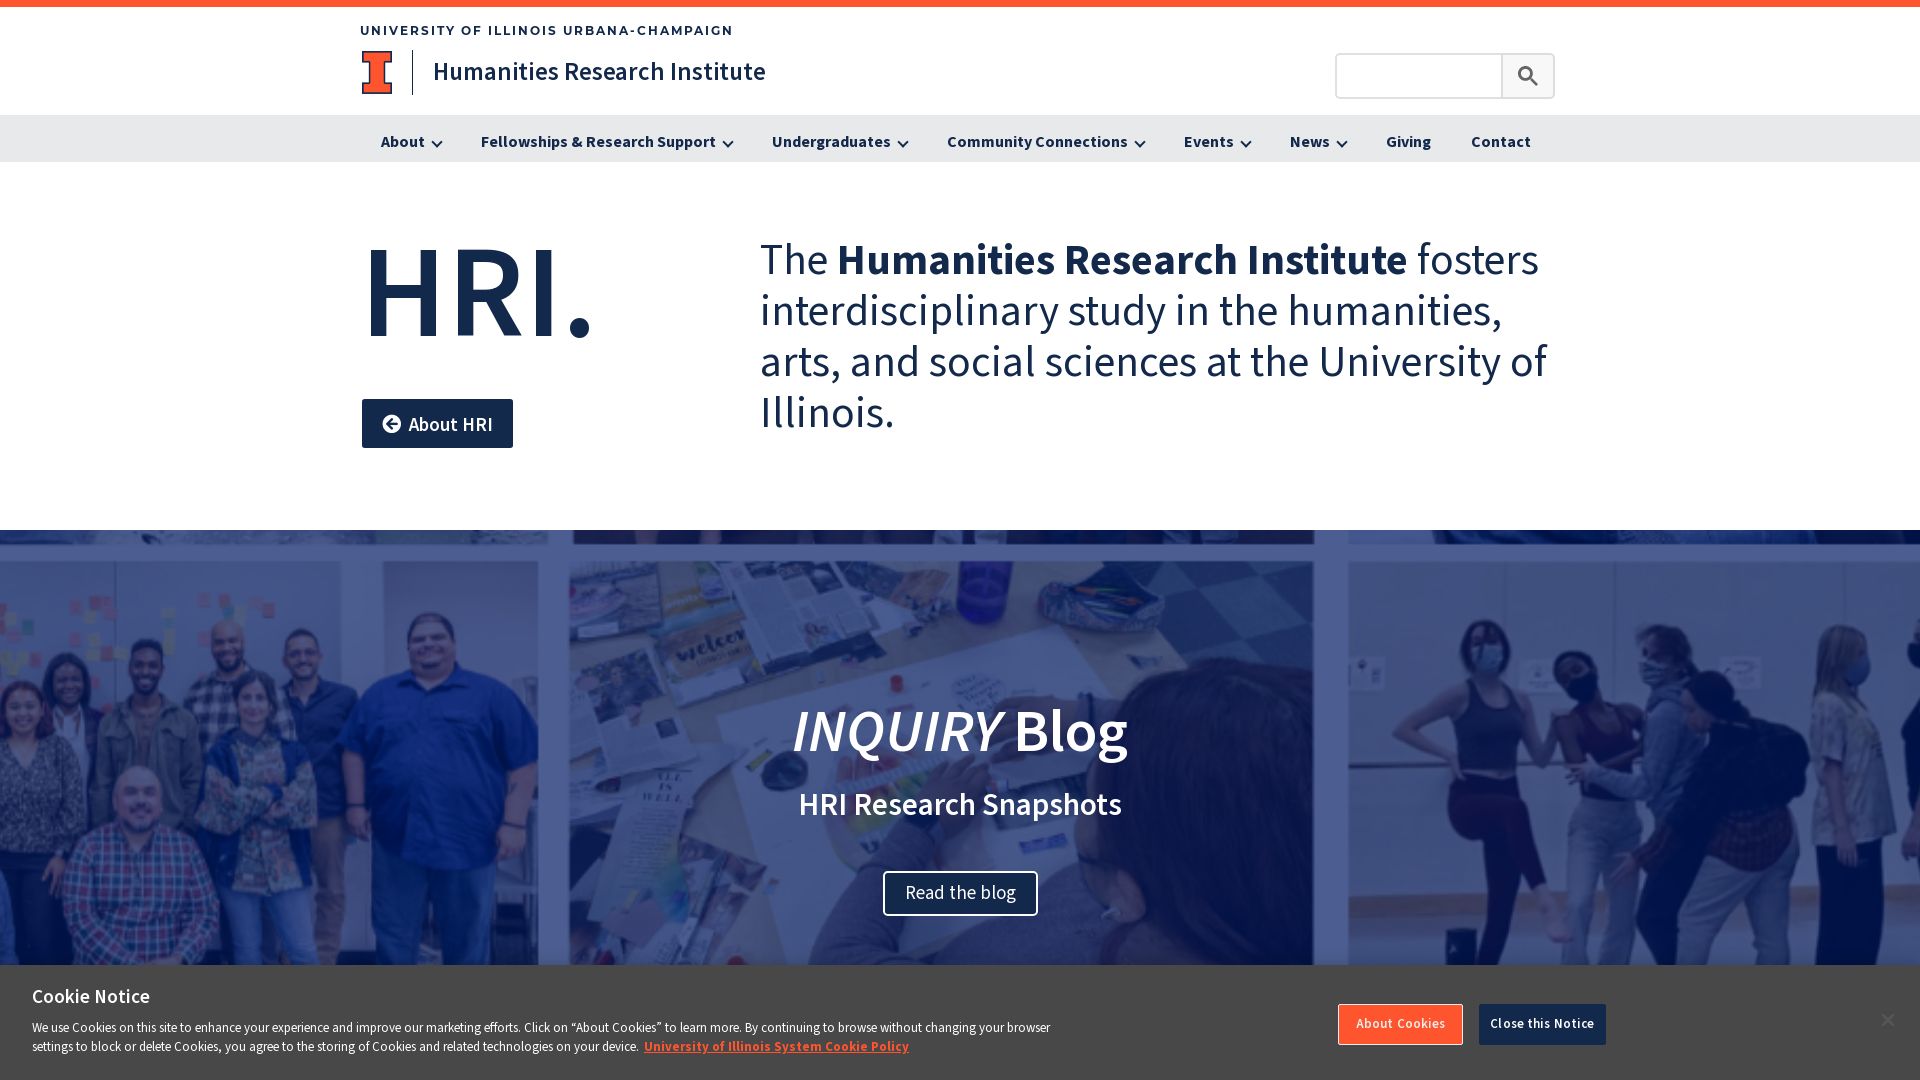 Website status hri.illinois.edu is   ONLINE